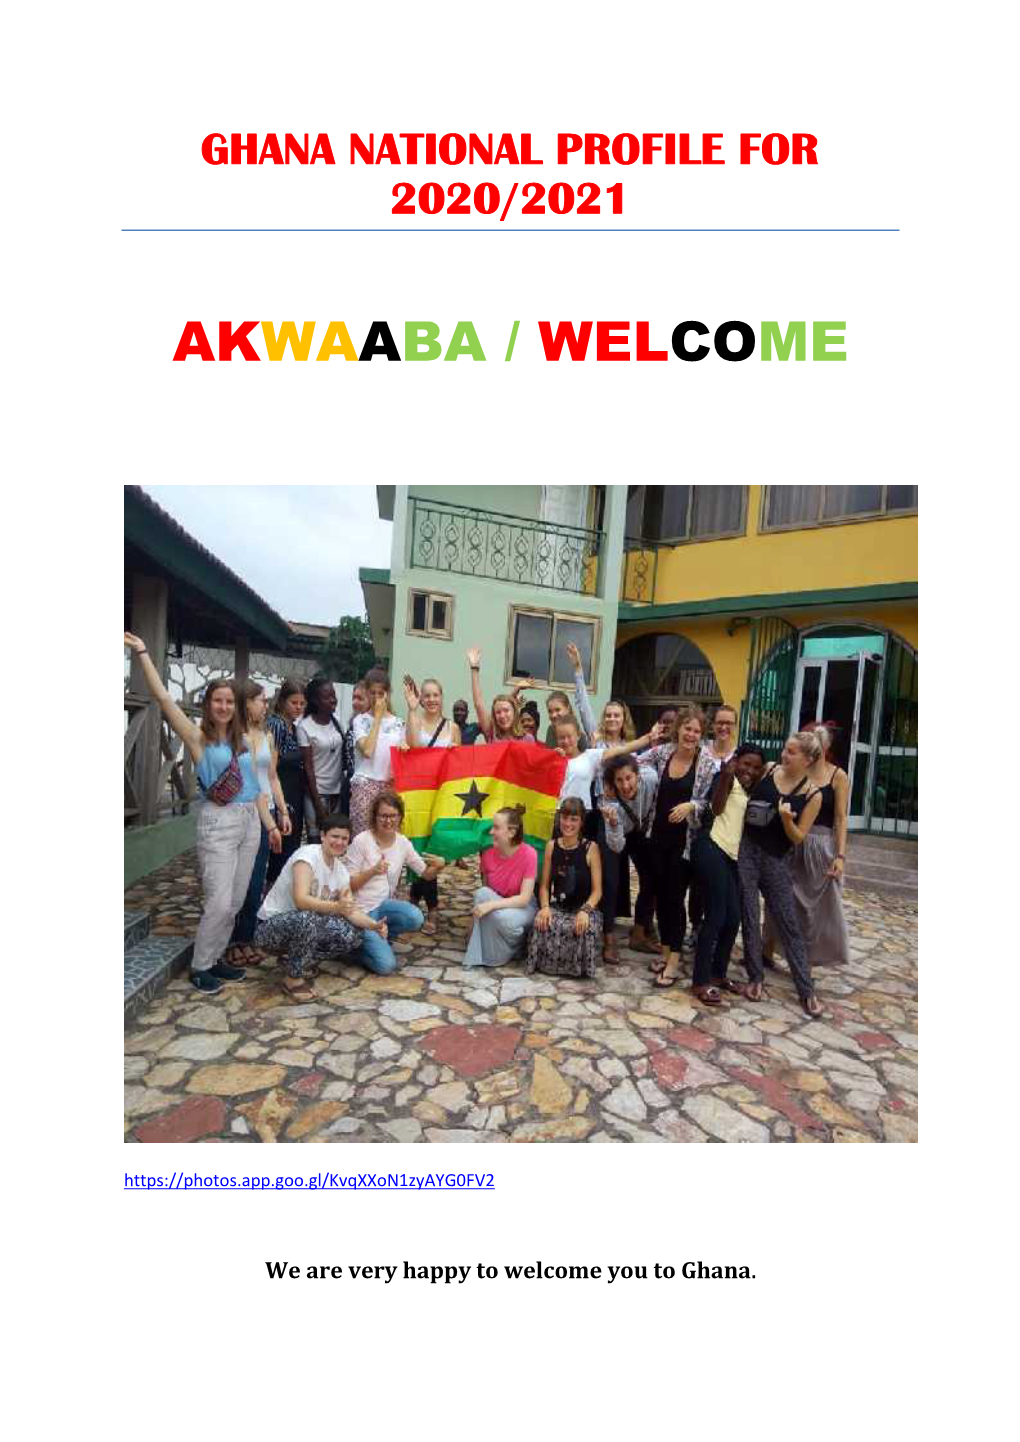 Akwaaba / Welcome